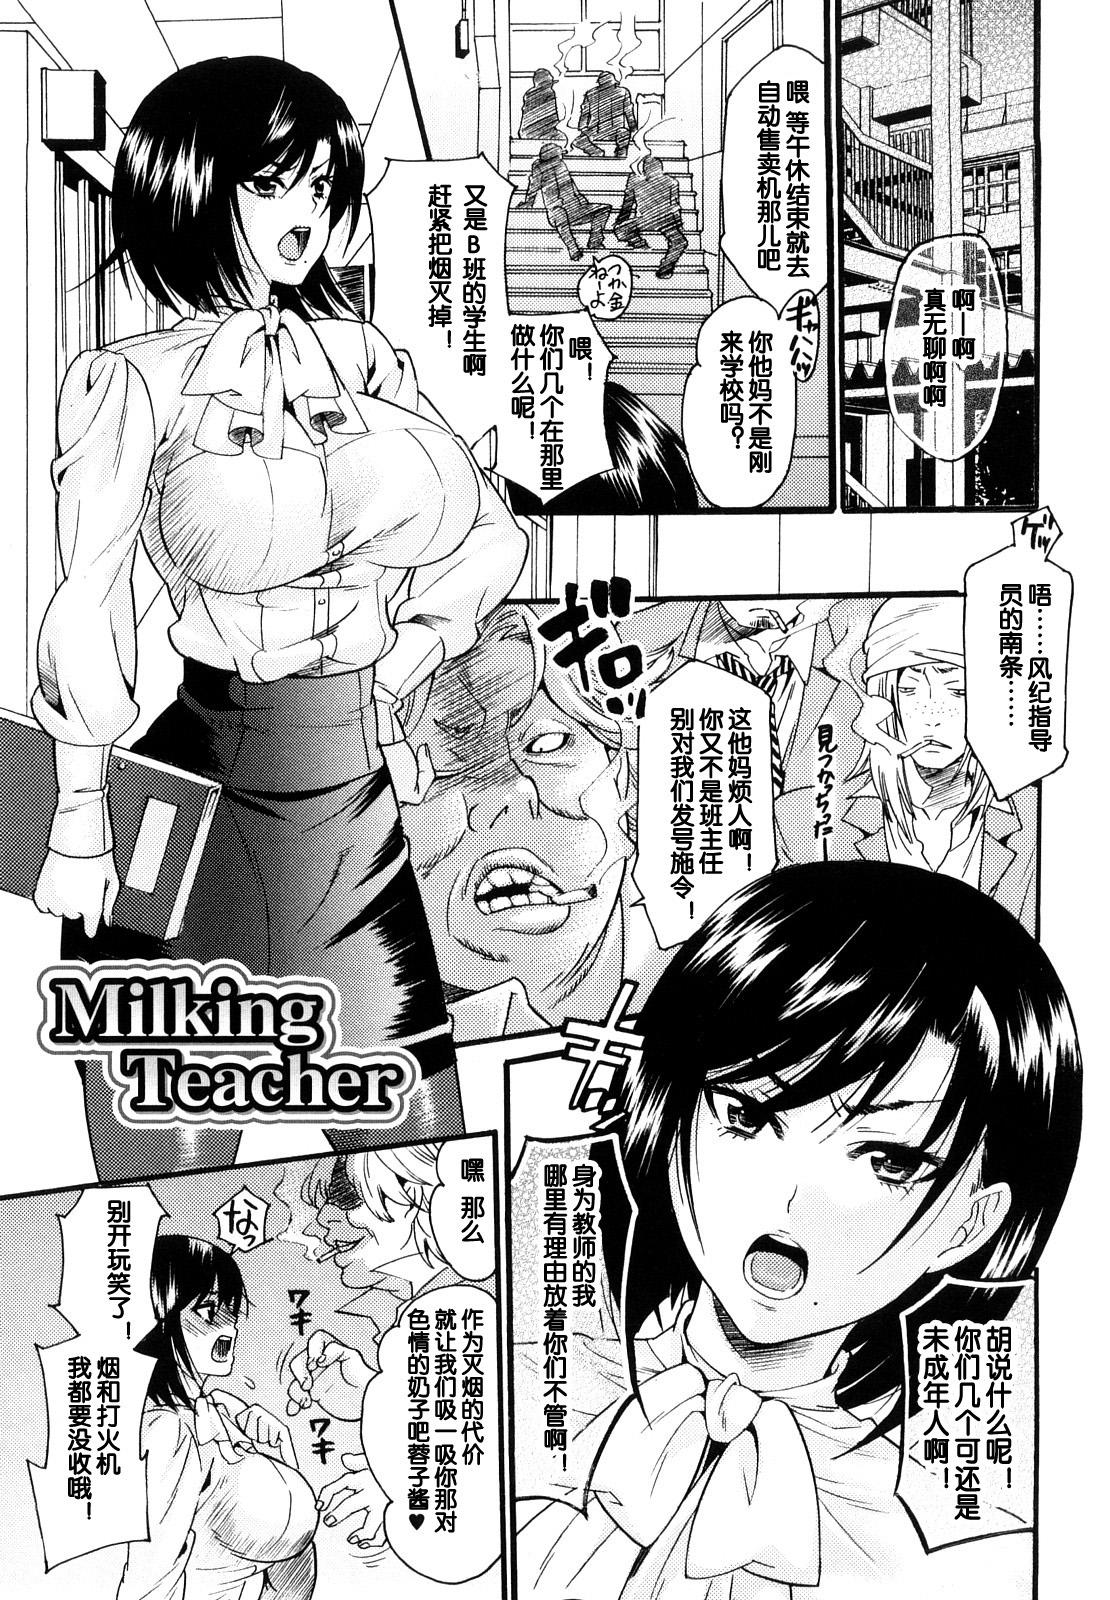 Milking Teacher 0